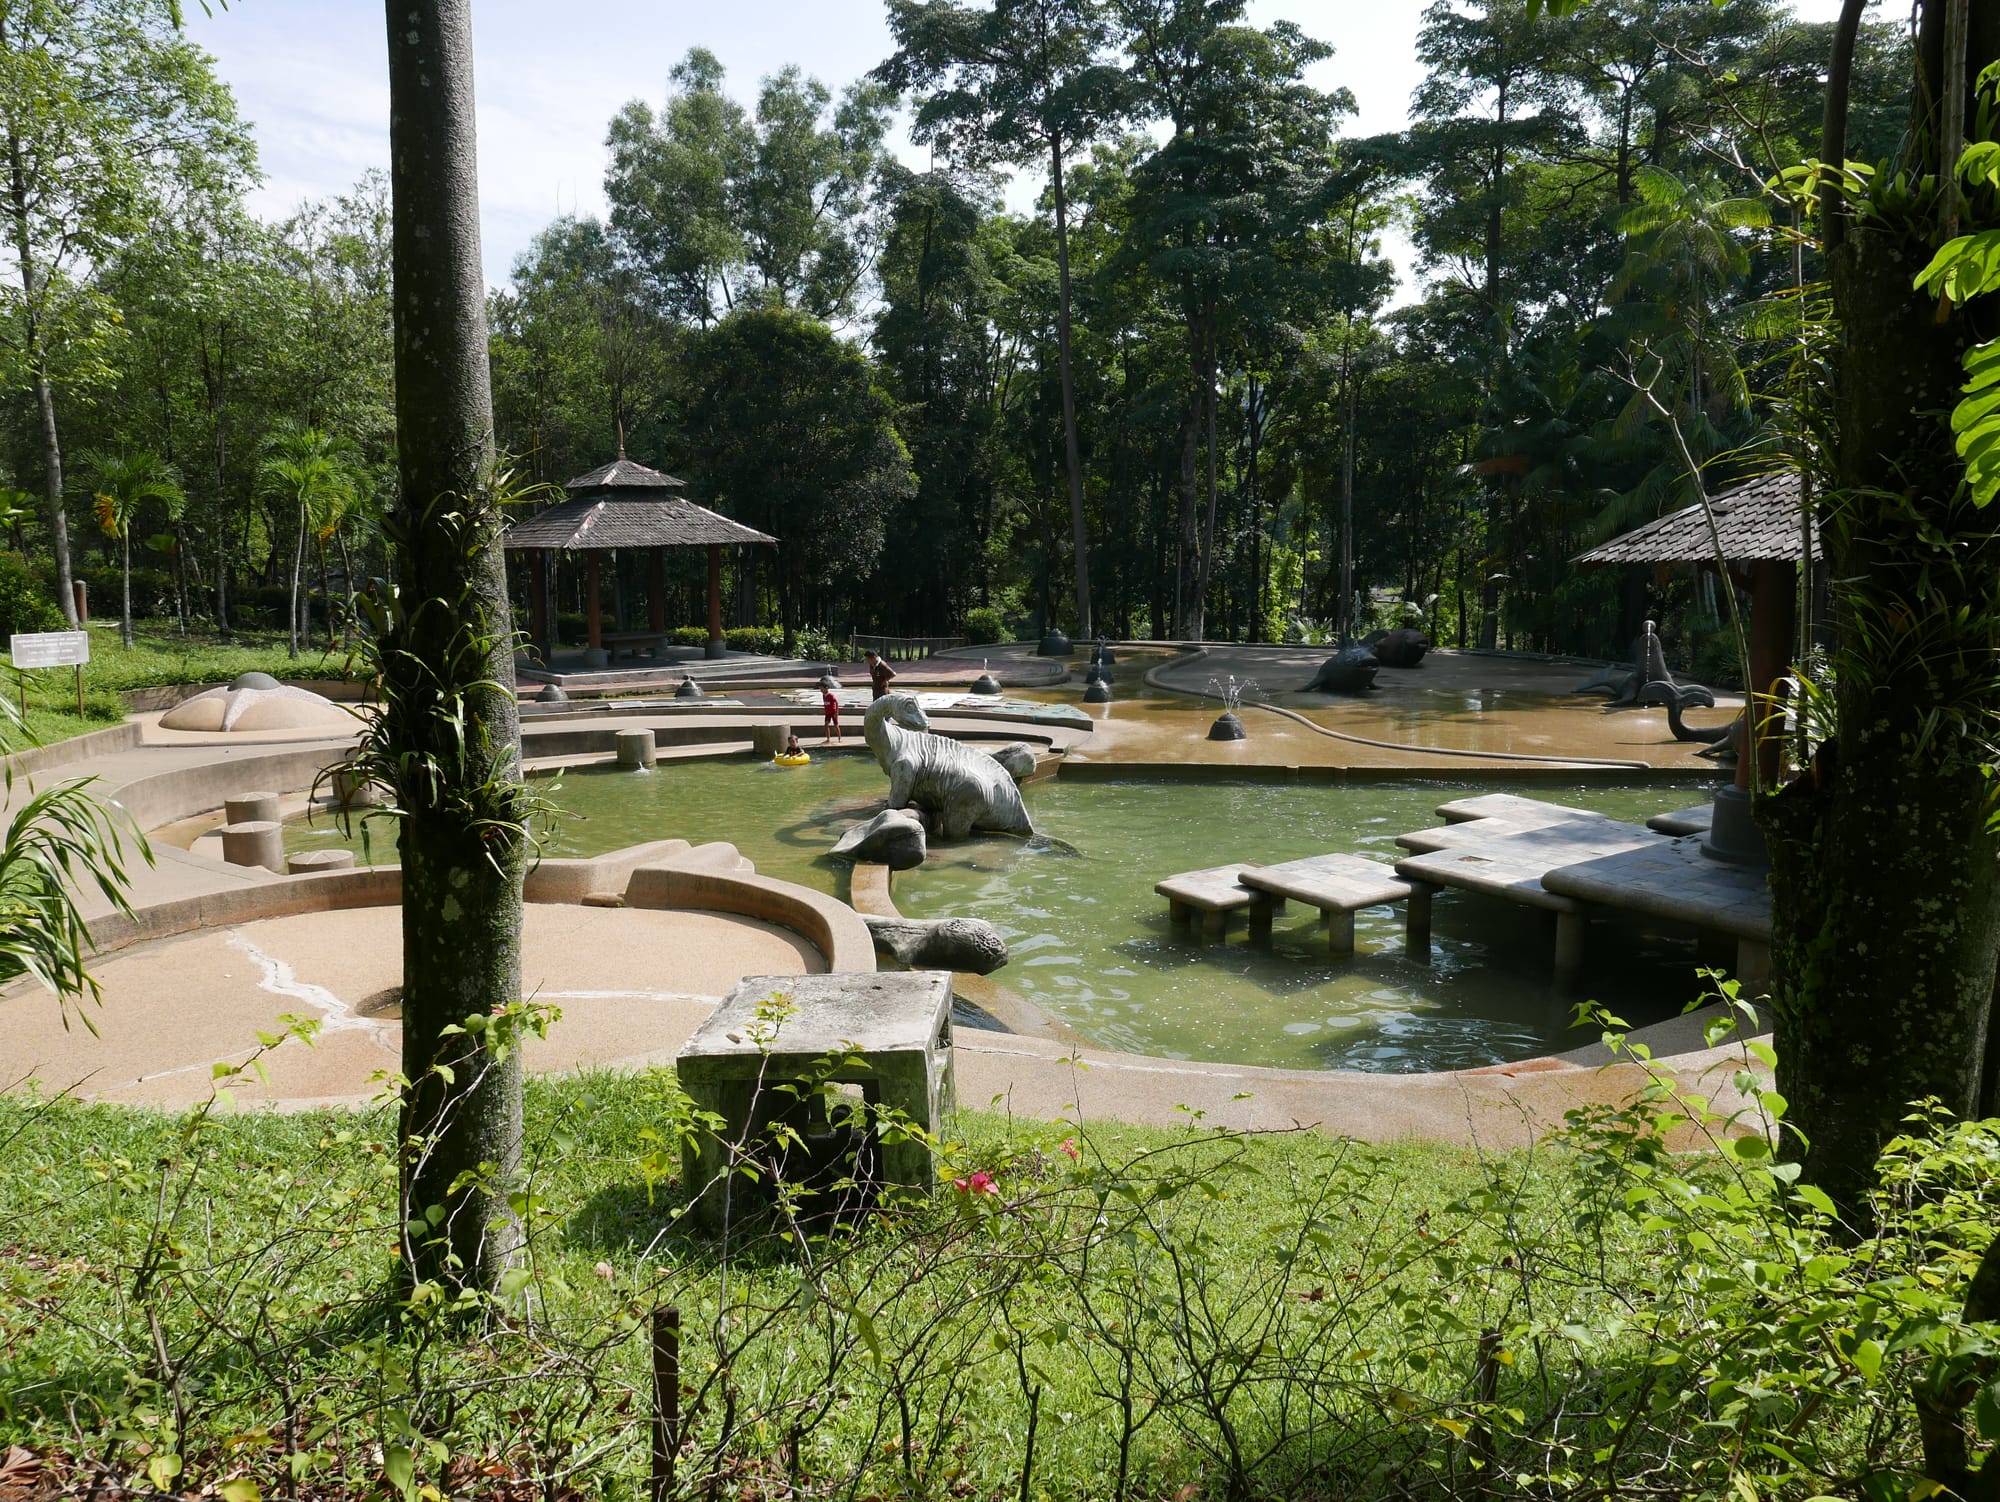 Photo by Author — ponds at the Hutan Bandar, Johor Bahru, Johor, Malaysia